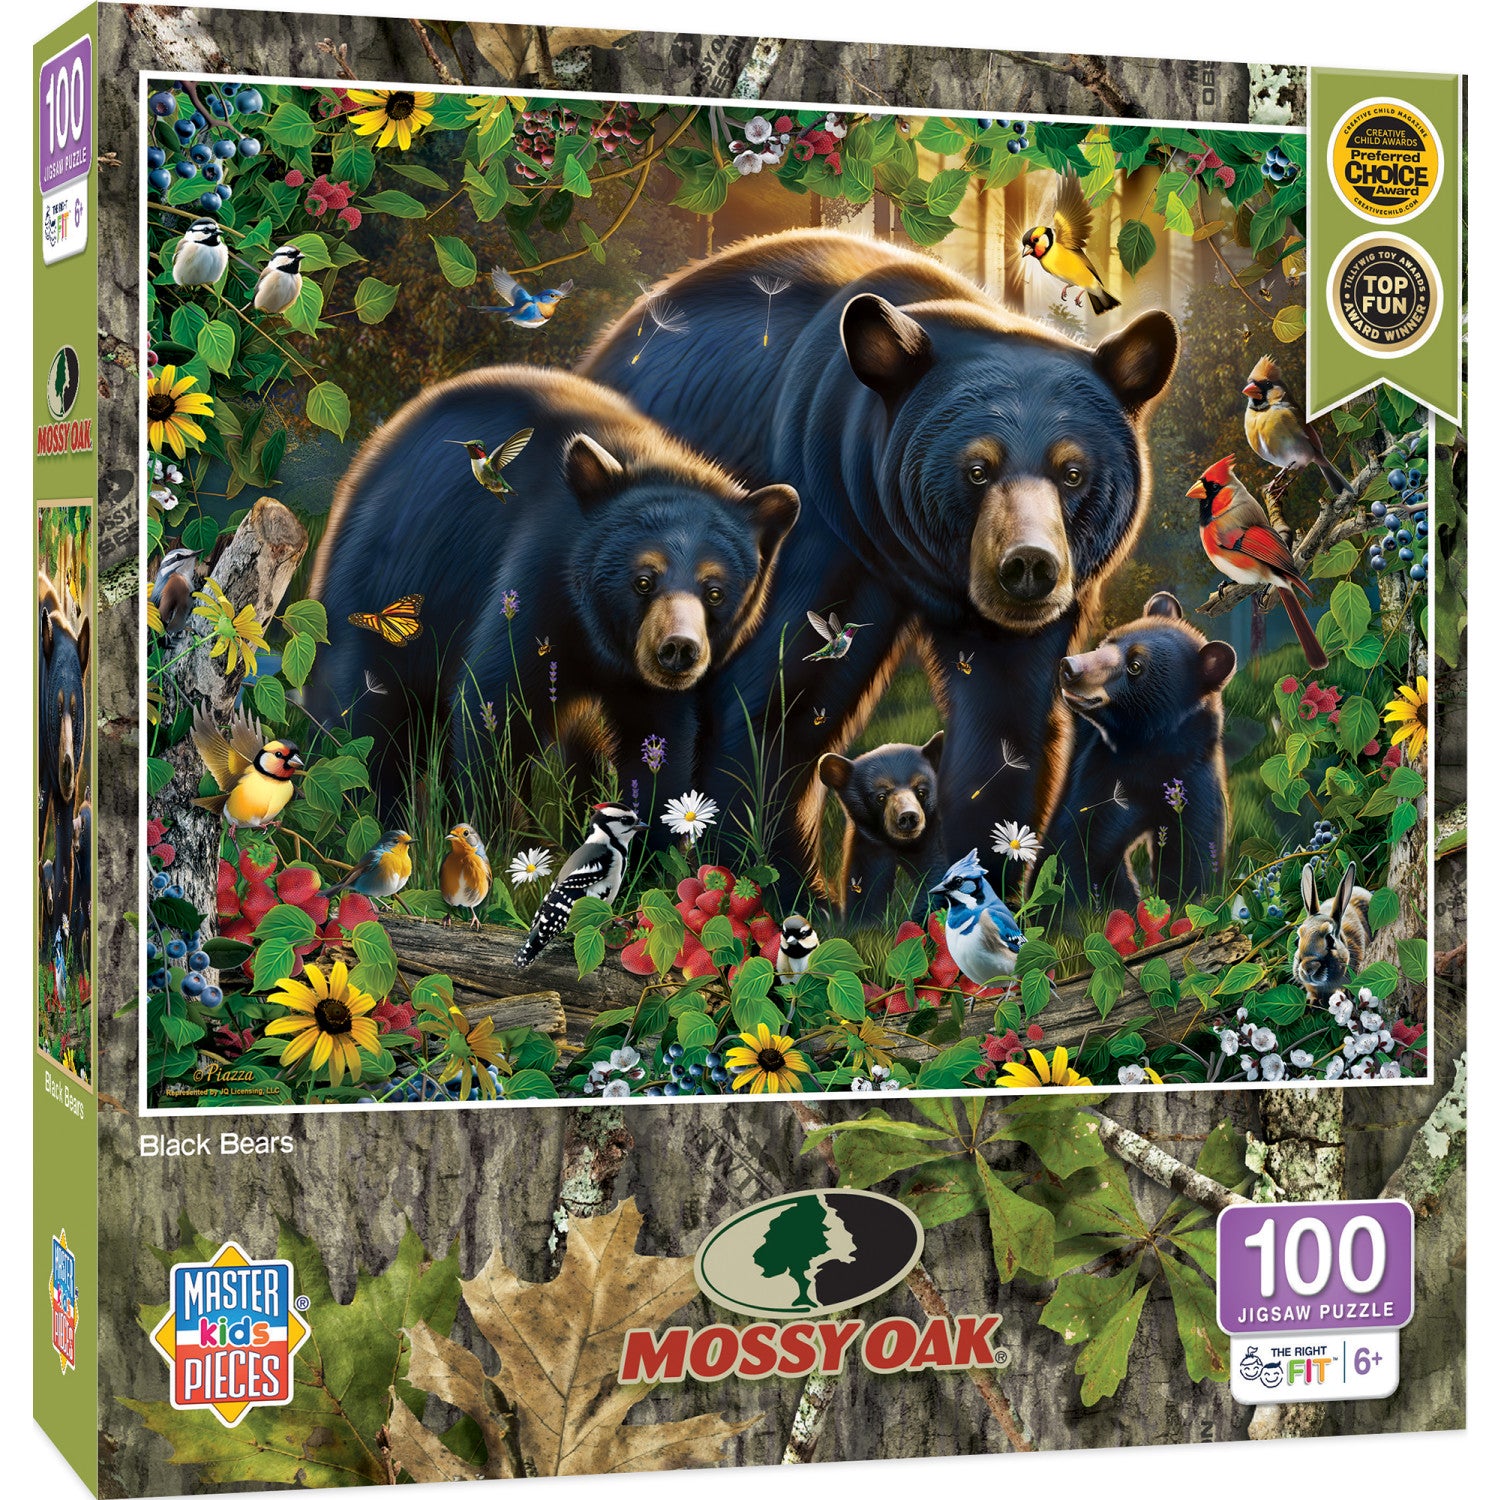 Mossy Oak - Black Bears 100 Piece Jigsaw Puzzle